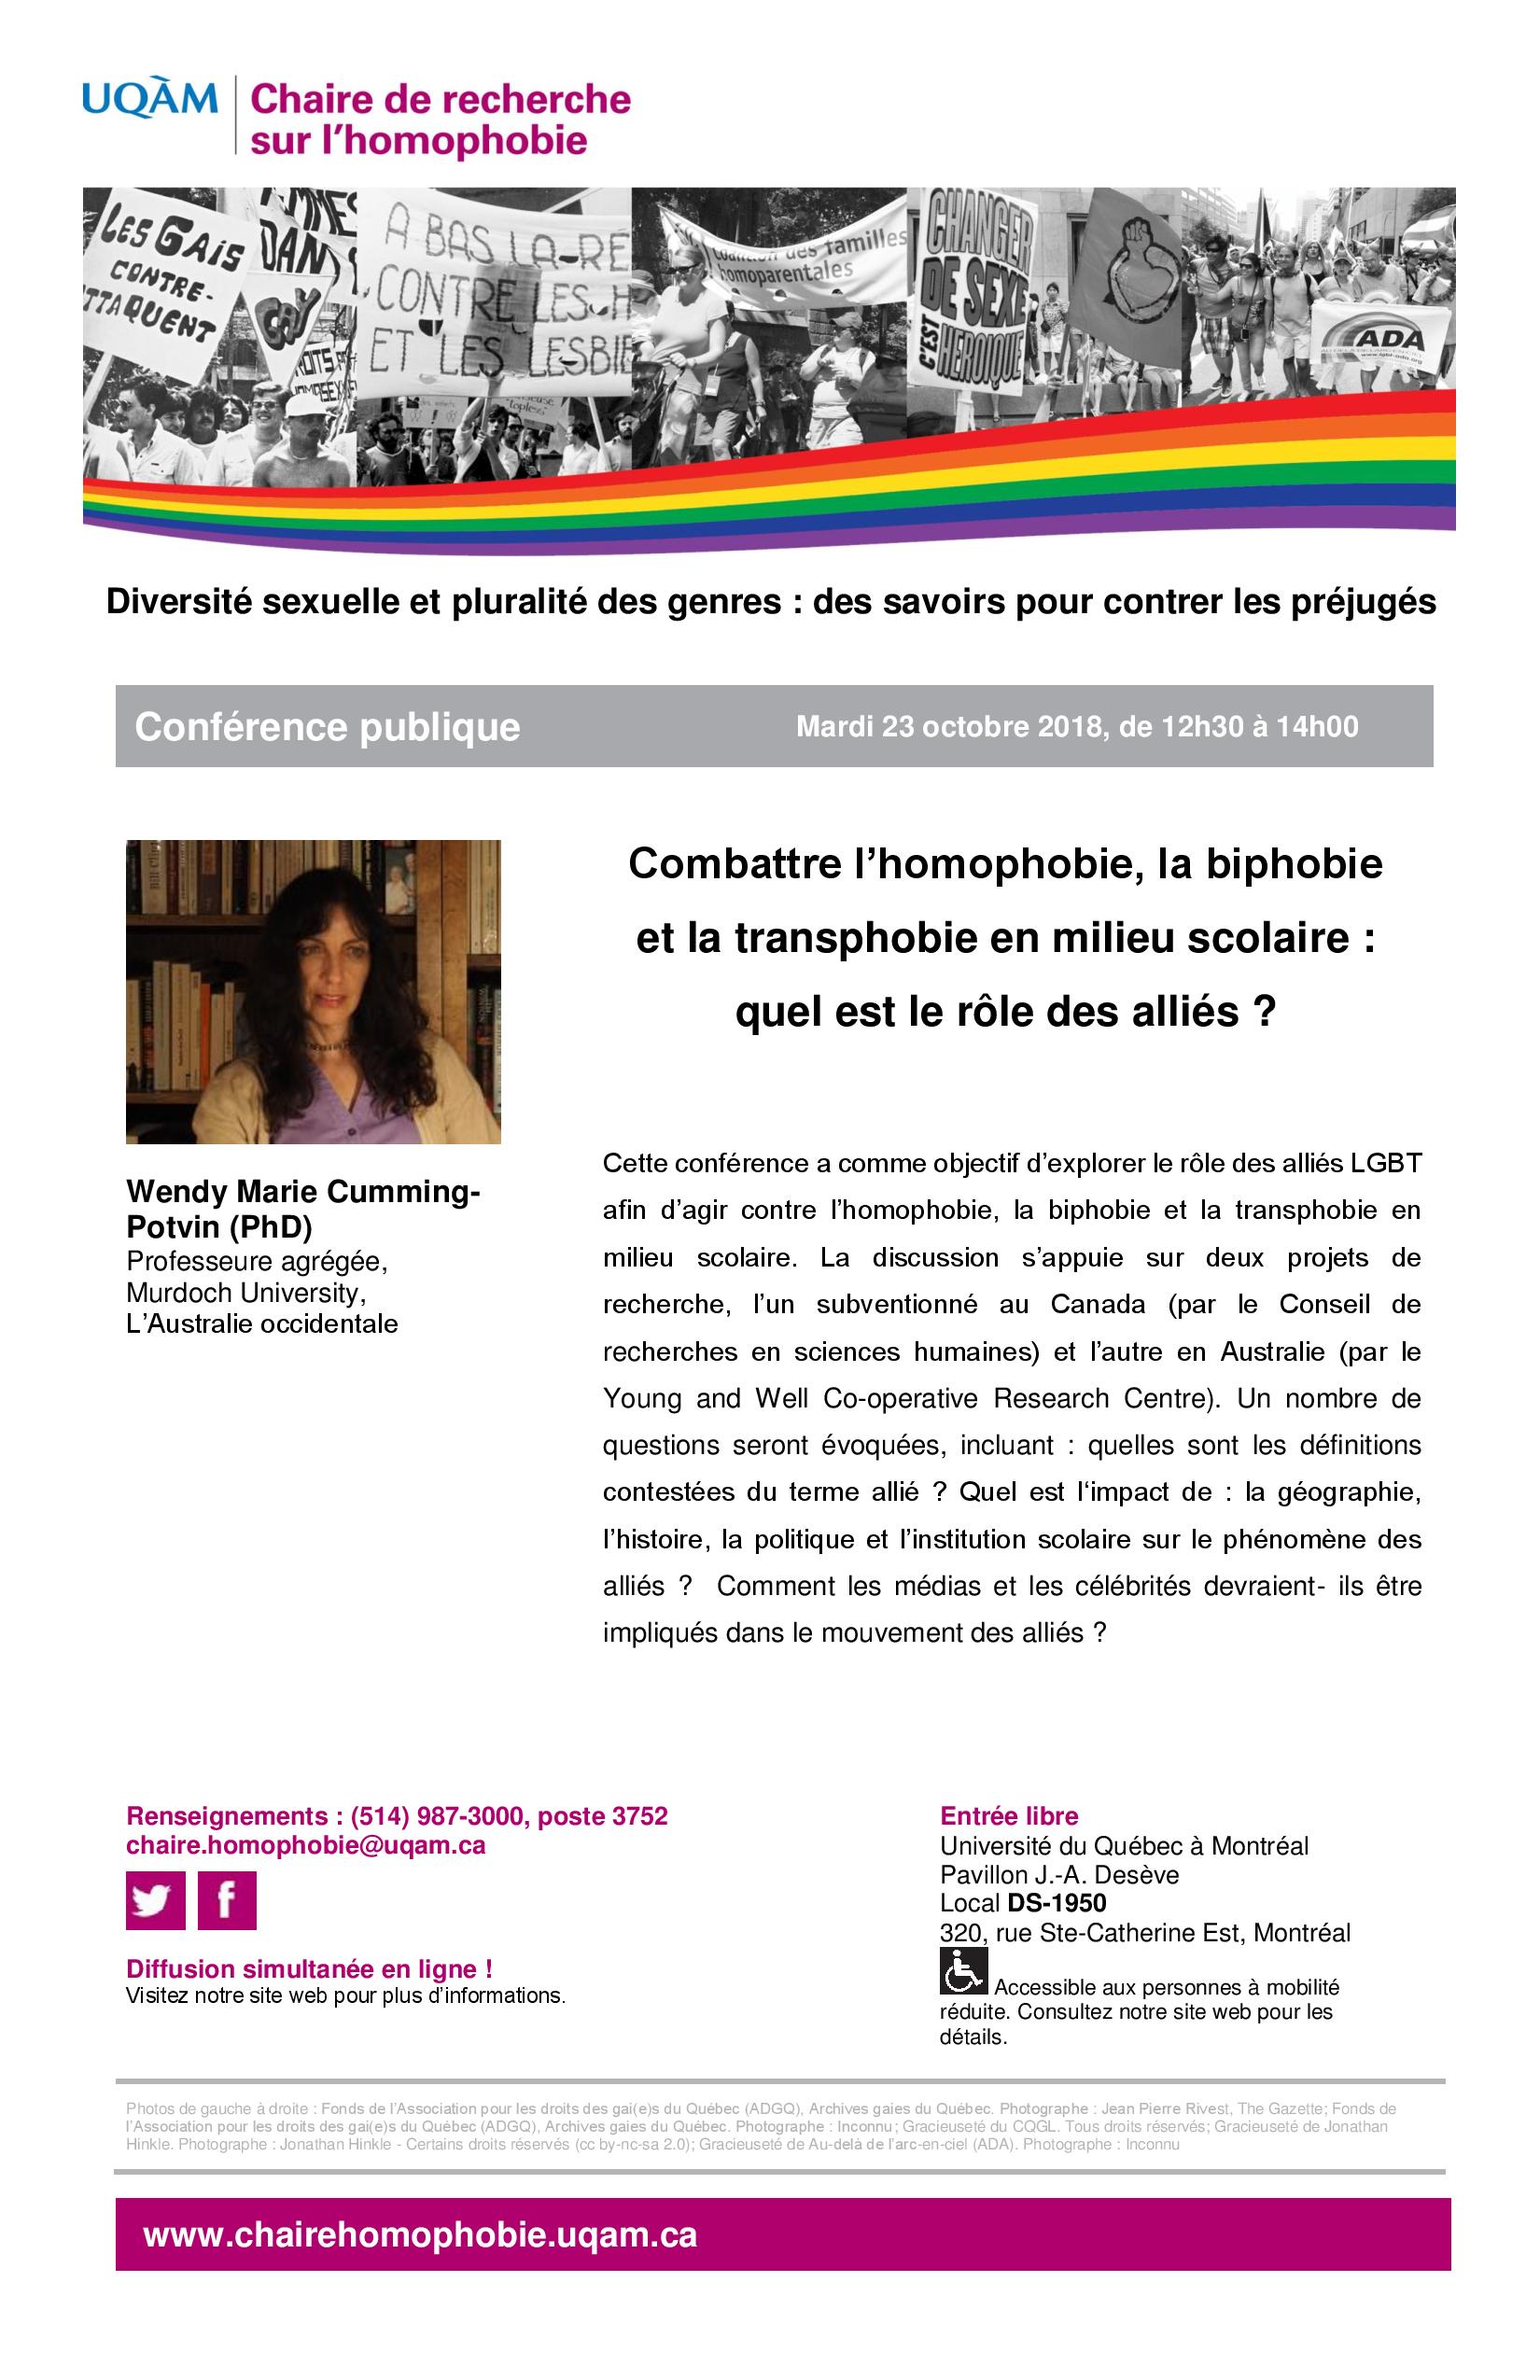 CONFÉRENCE PUBLIQUE | Combattre l'homophobie, la biphobie et la transphobie en milieu scolaire : Quel est le rôle des allié·e·s ?